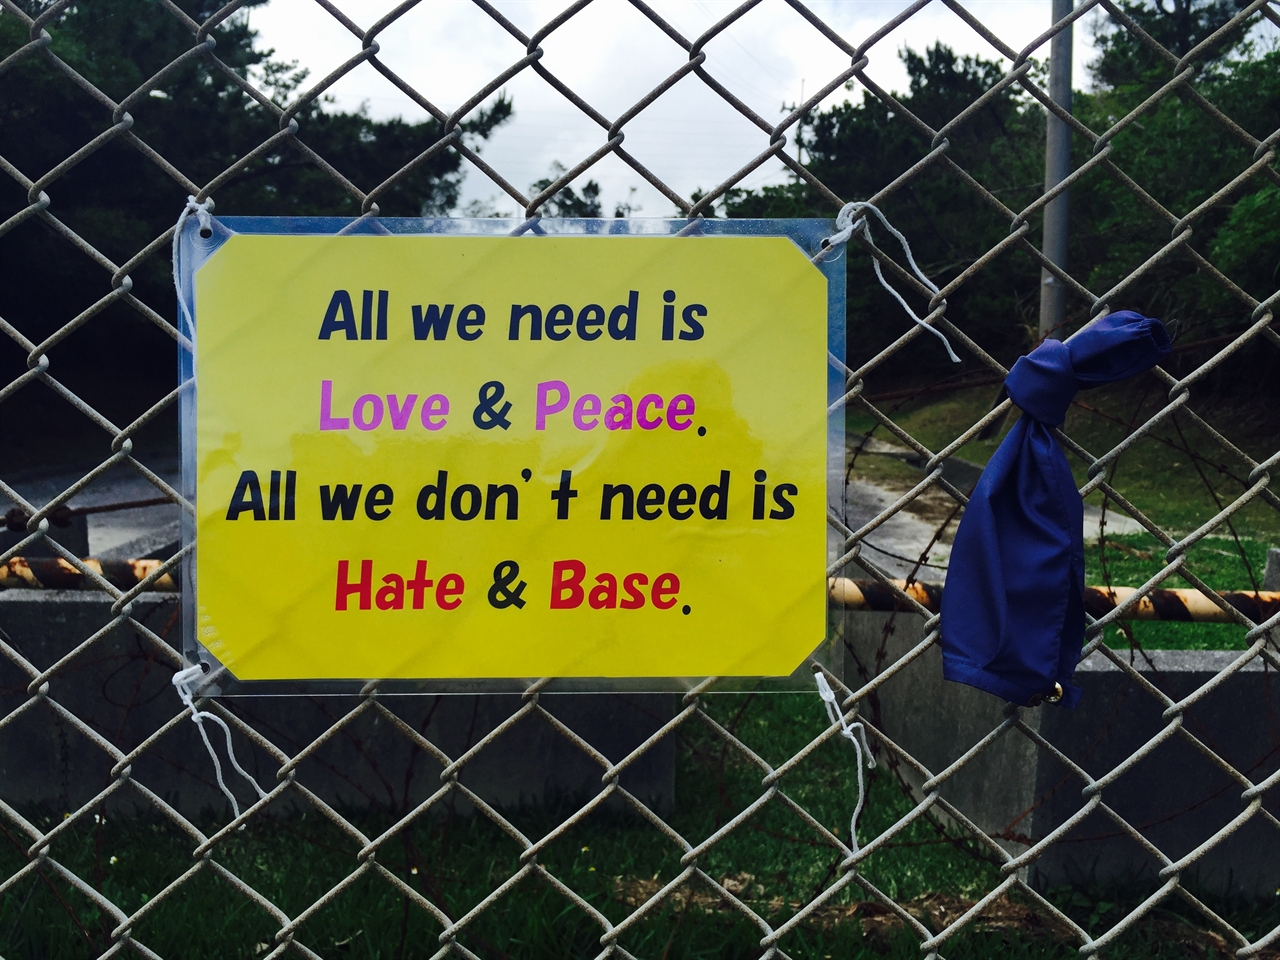 헤노코 기지 건설이 진행되고 있는 캠프 슈와브 앞 철조망에 붙은 문구. "우리에게 필요한 것은 사랑과 평화. 우리에게 필요없는 것은 증오와 기지"